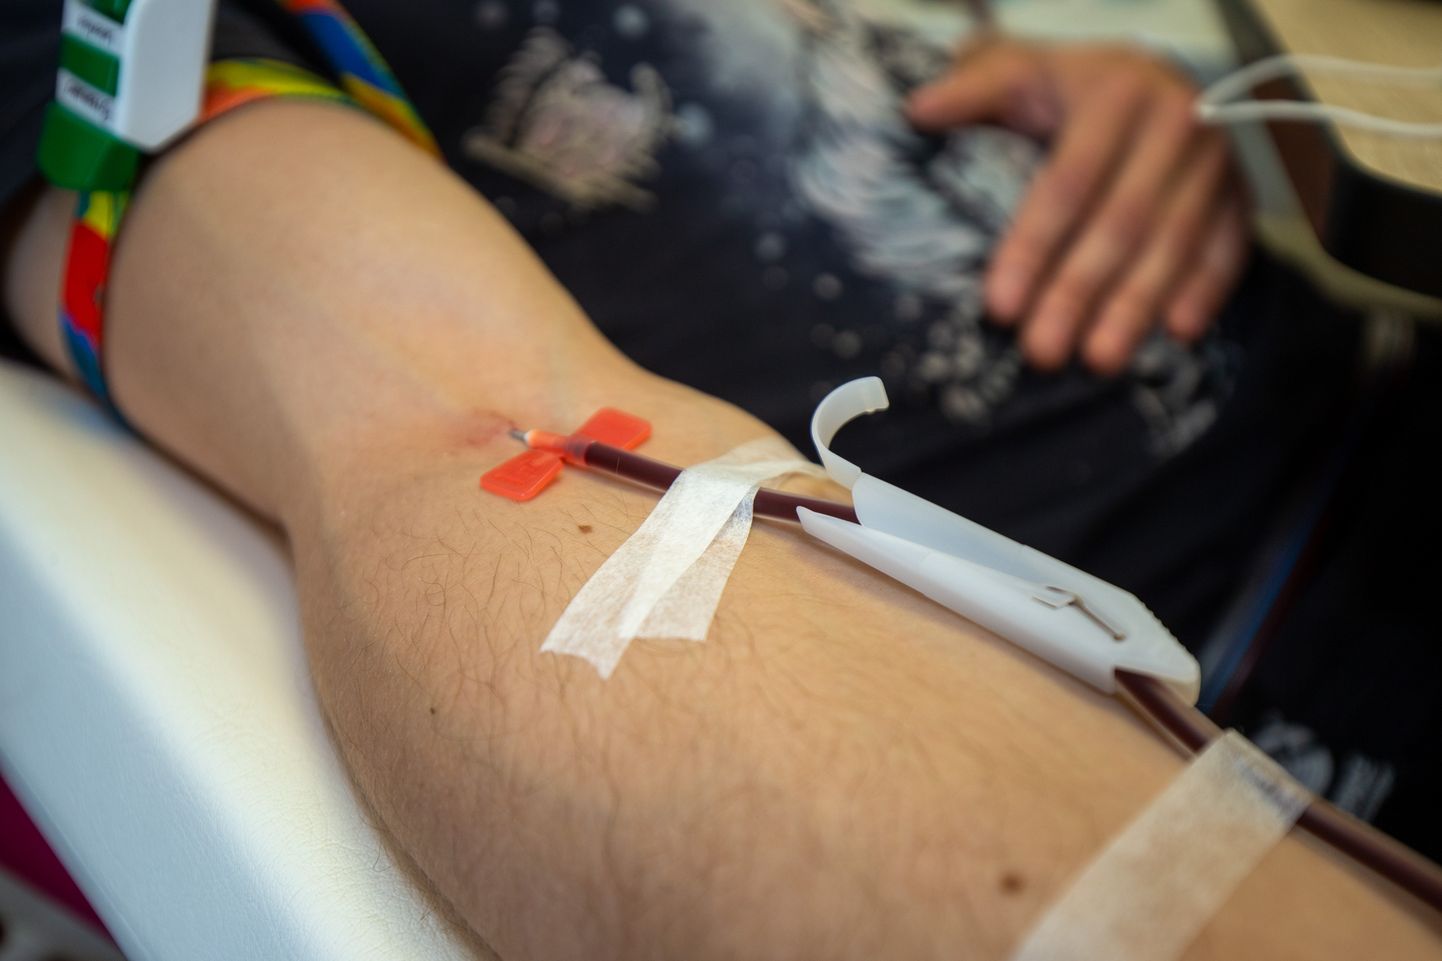 Seni on verekeskuse abipalvele reageerinud vaid paar doonorit.